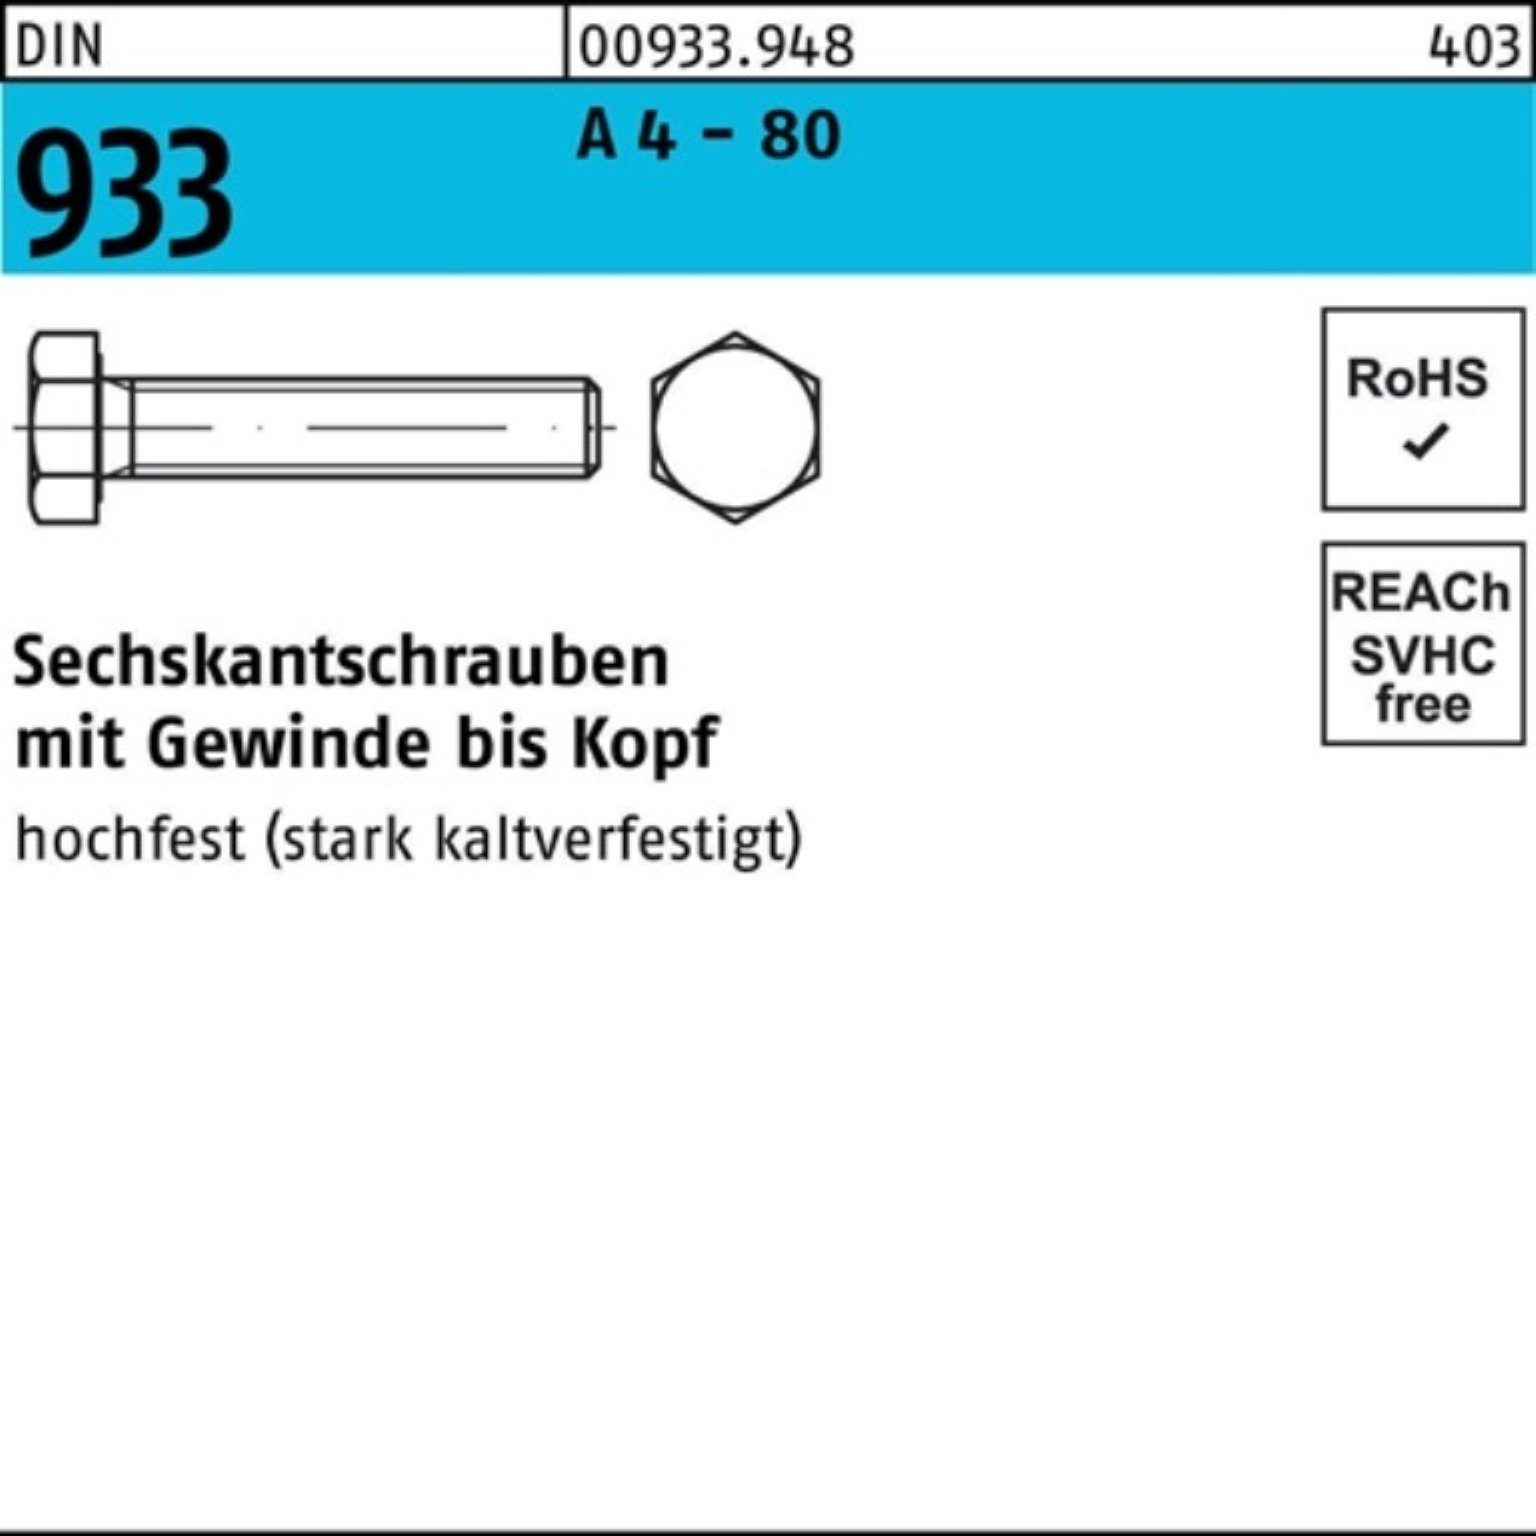 Reyher Sechskantschraube 100er Pack Sechskantschraube DIN 933 VG M8x 25 A 4 - 80 100 Stück DIN